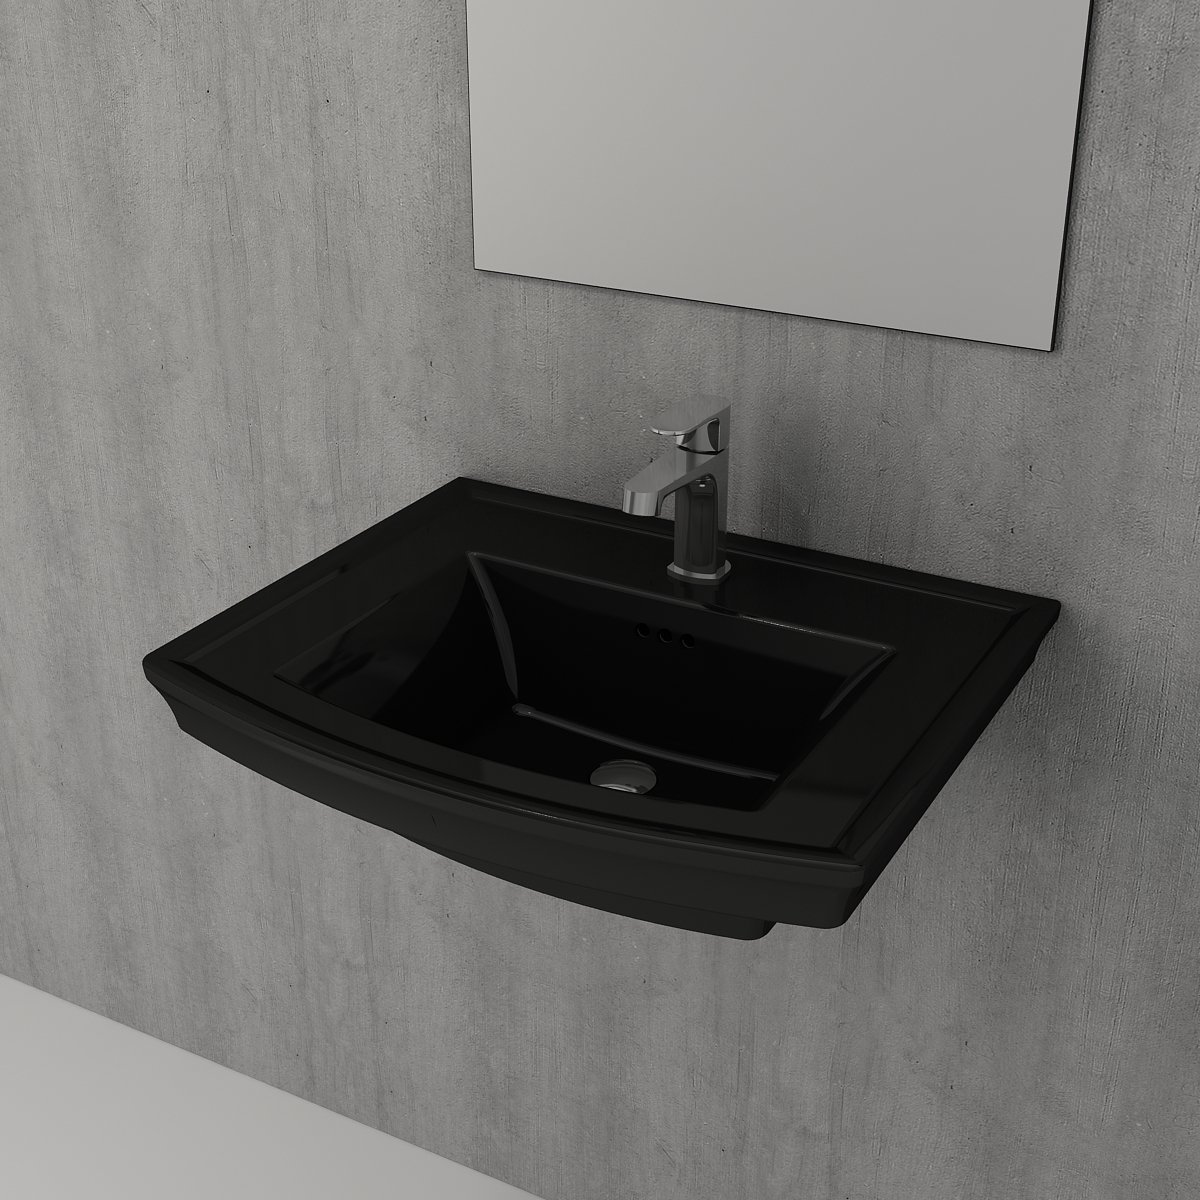 Bocchi Lavita lavabo 60 cm Parlak Siyah